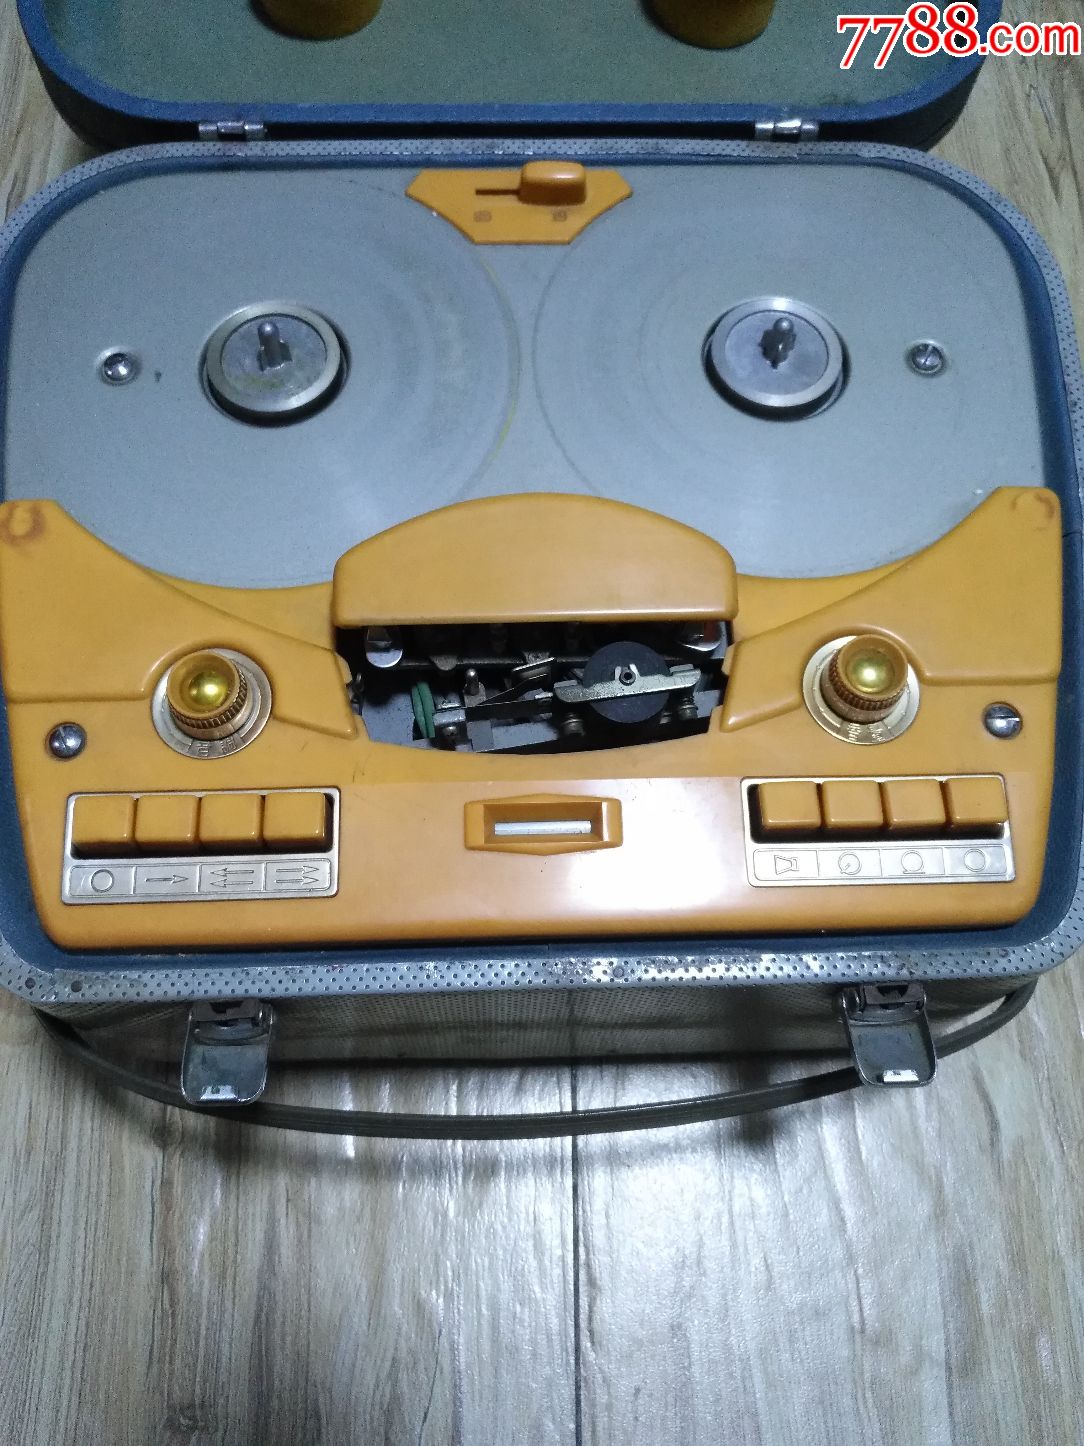 文革老上海牌电子管开盘机601型开盘录音机老式古董